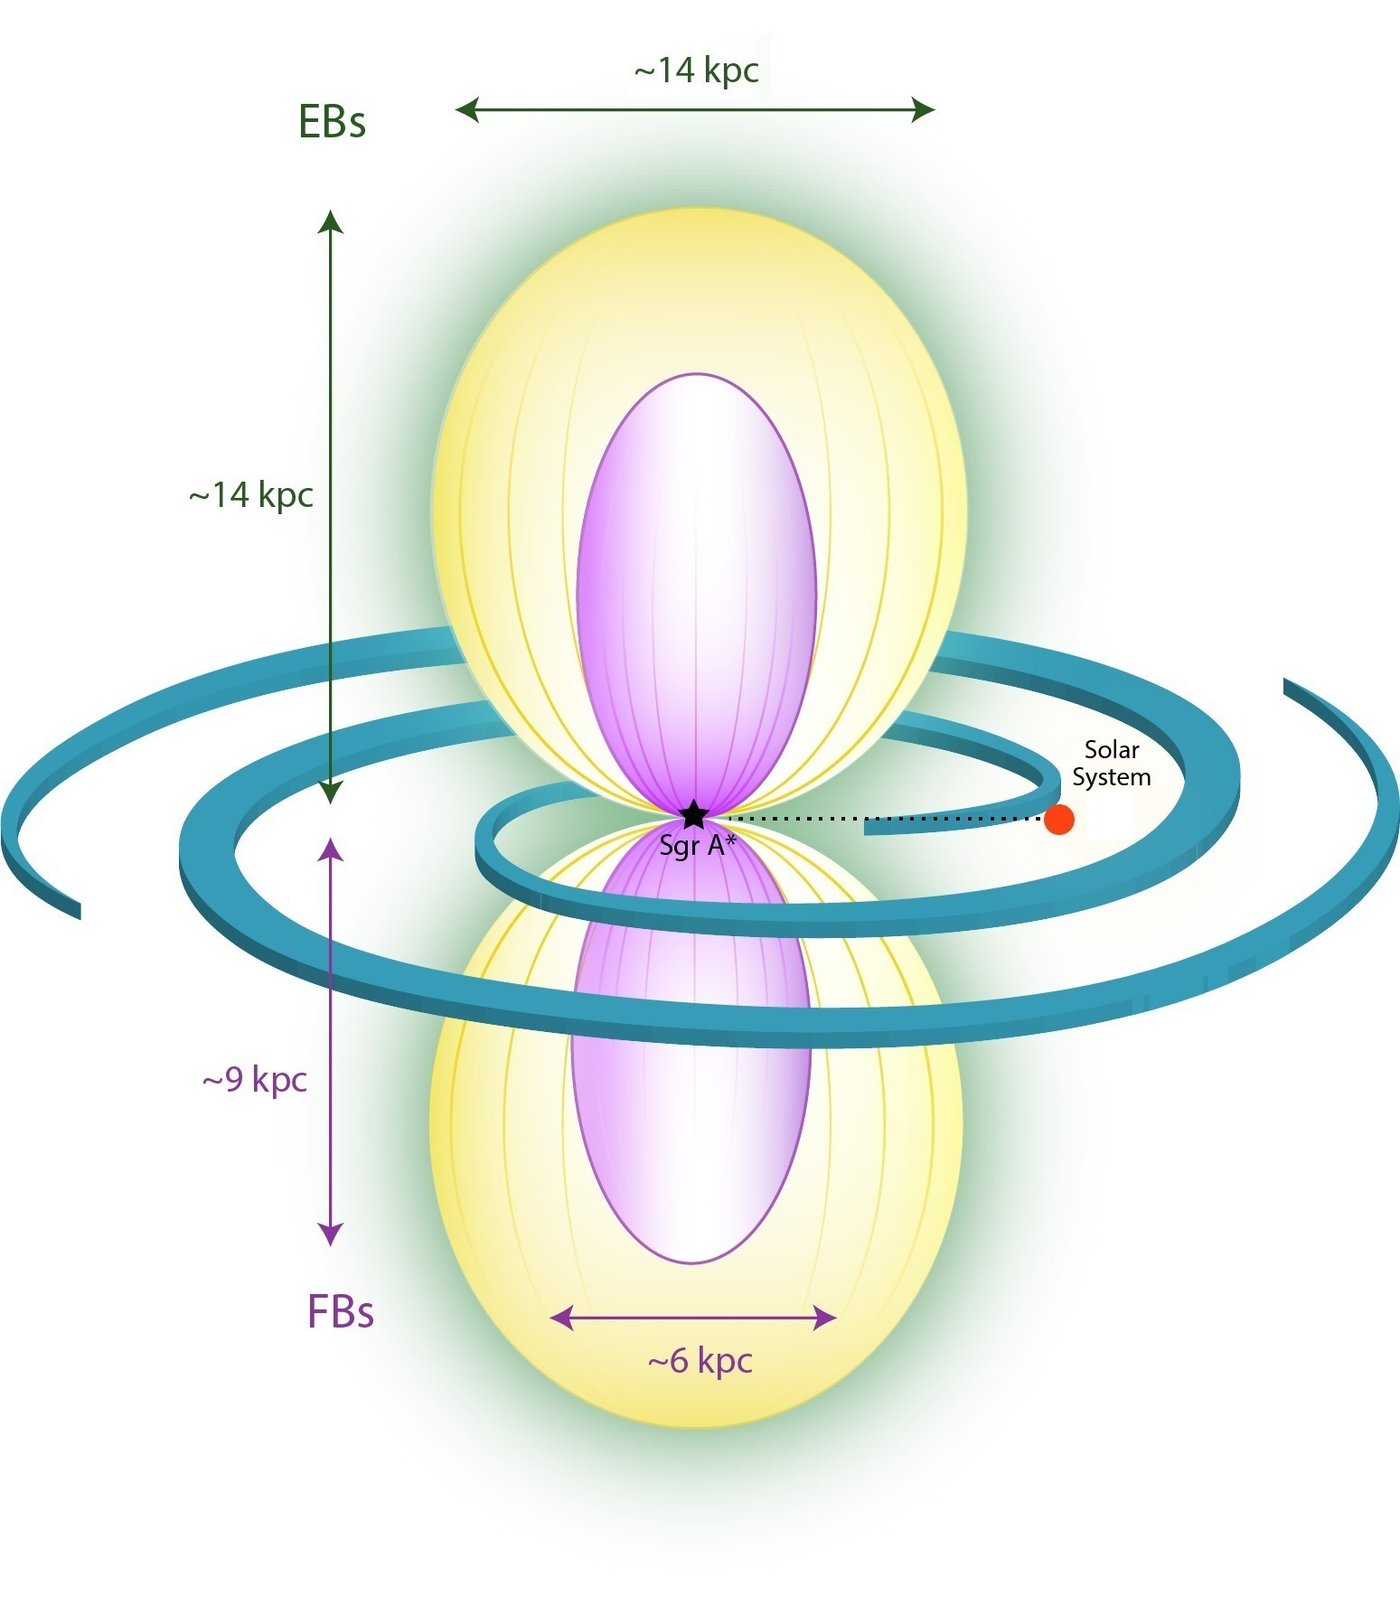 Schematyczny widok bąbli eROSITA (kolor żółty) i Fermiego (fioletowy). Dysk galaktyczny jest oznaczony ramionami spiralnymi.